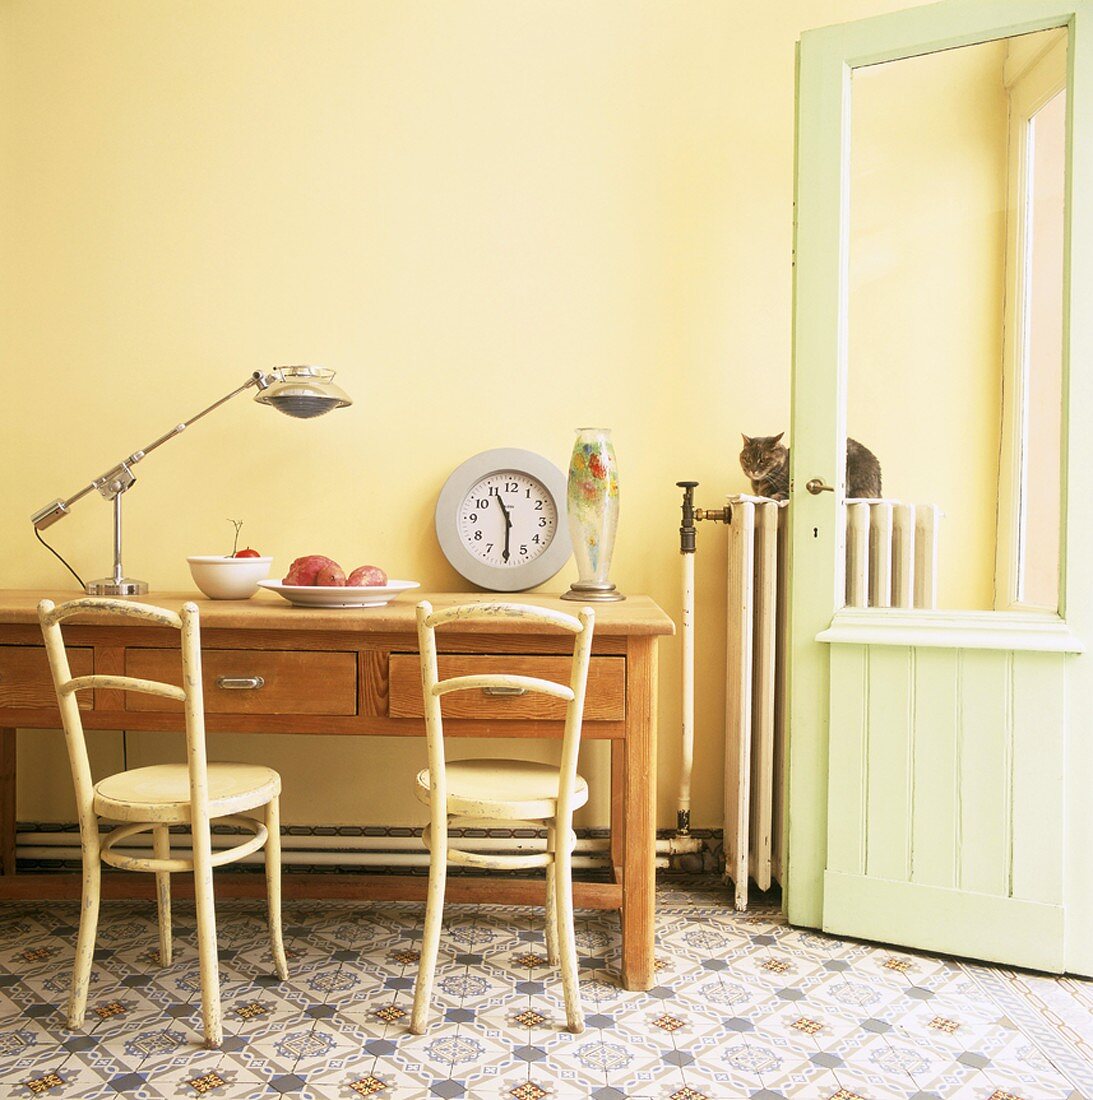 Alter Küchentisch und Vintagestühle vor einer gelben Wand